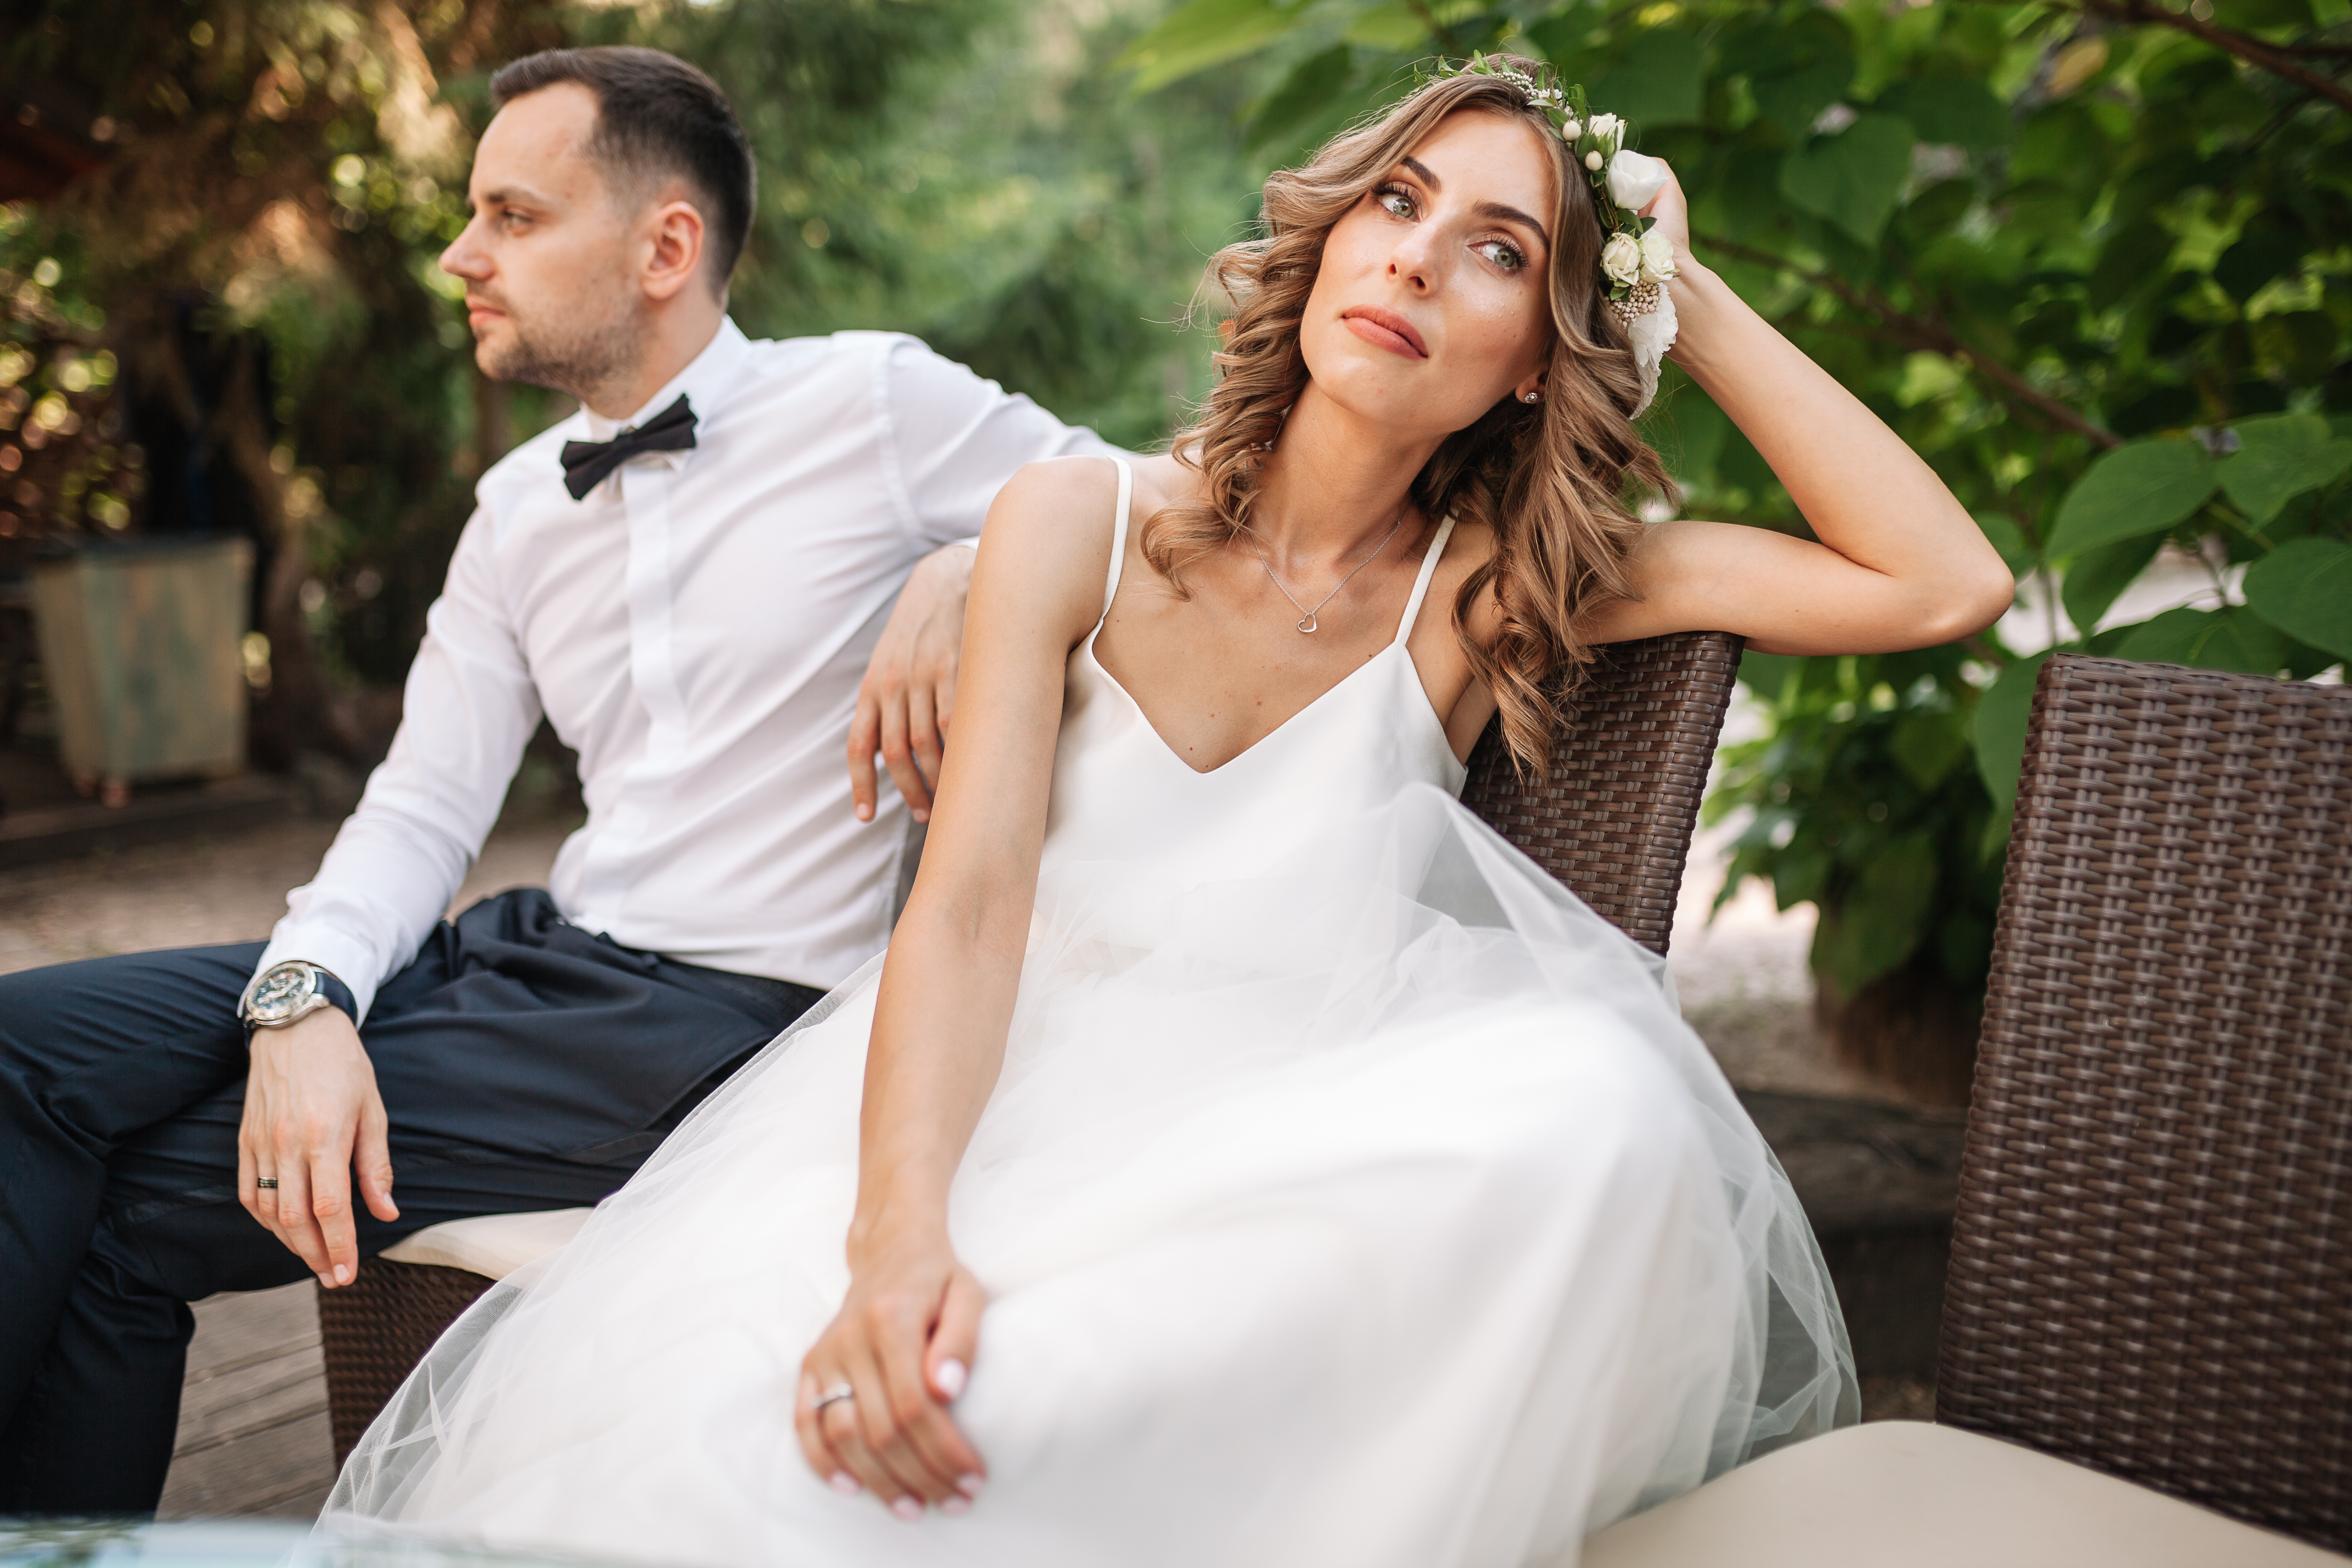 Bride and groom upset | Source: Shutterstock